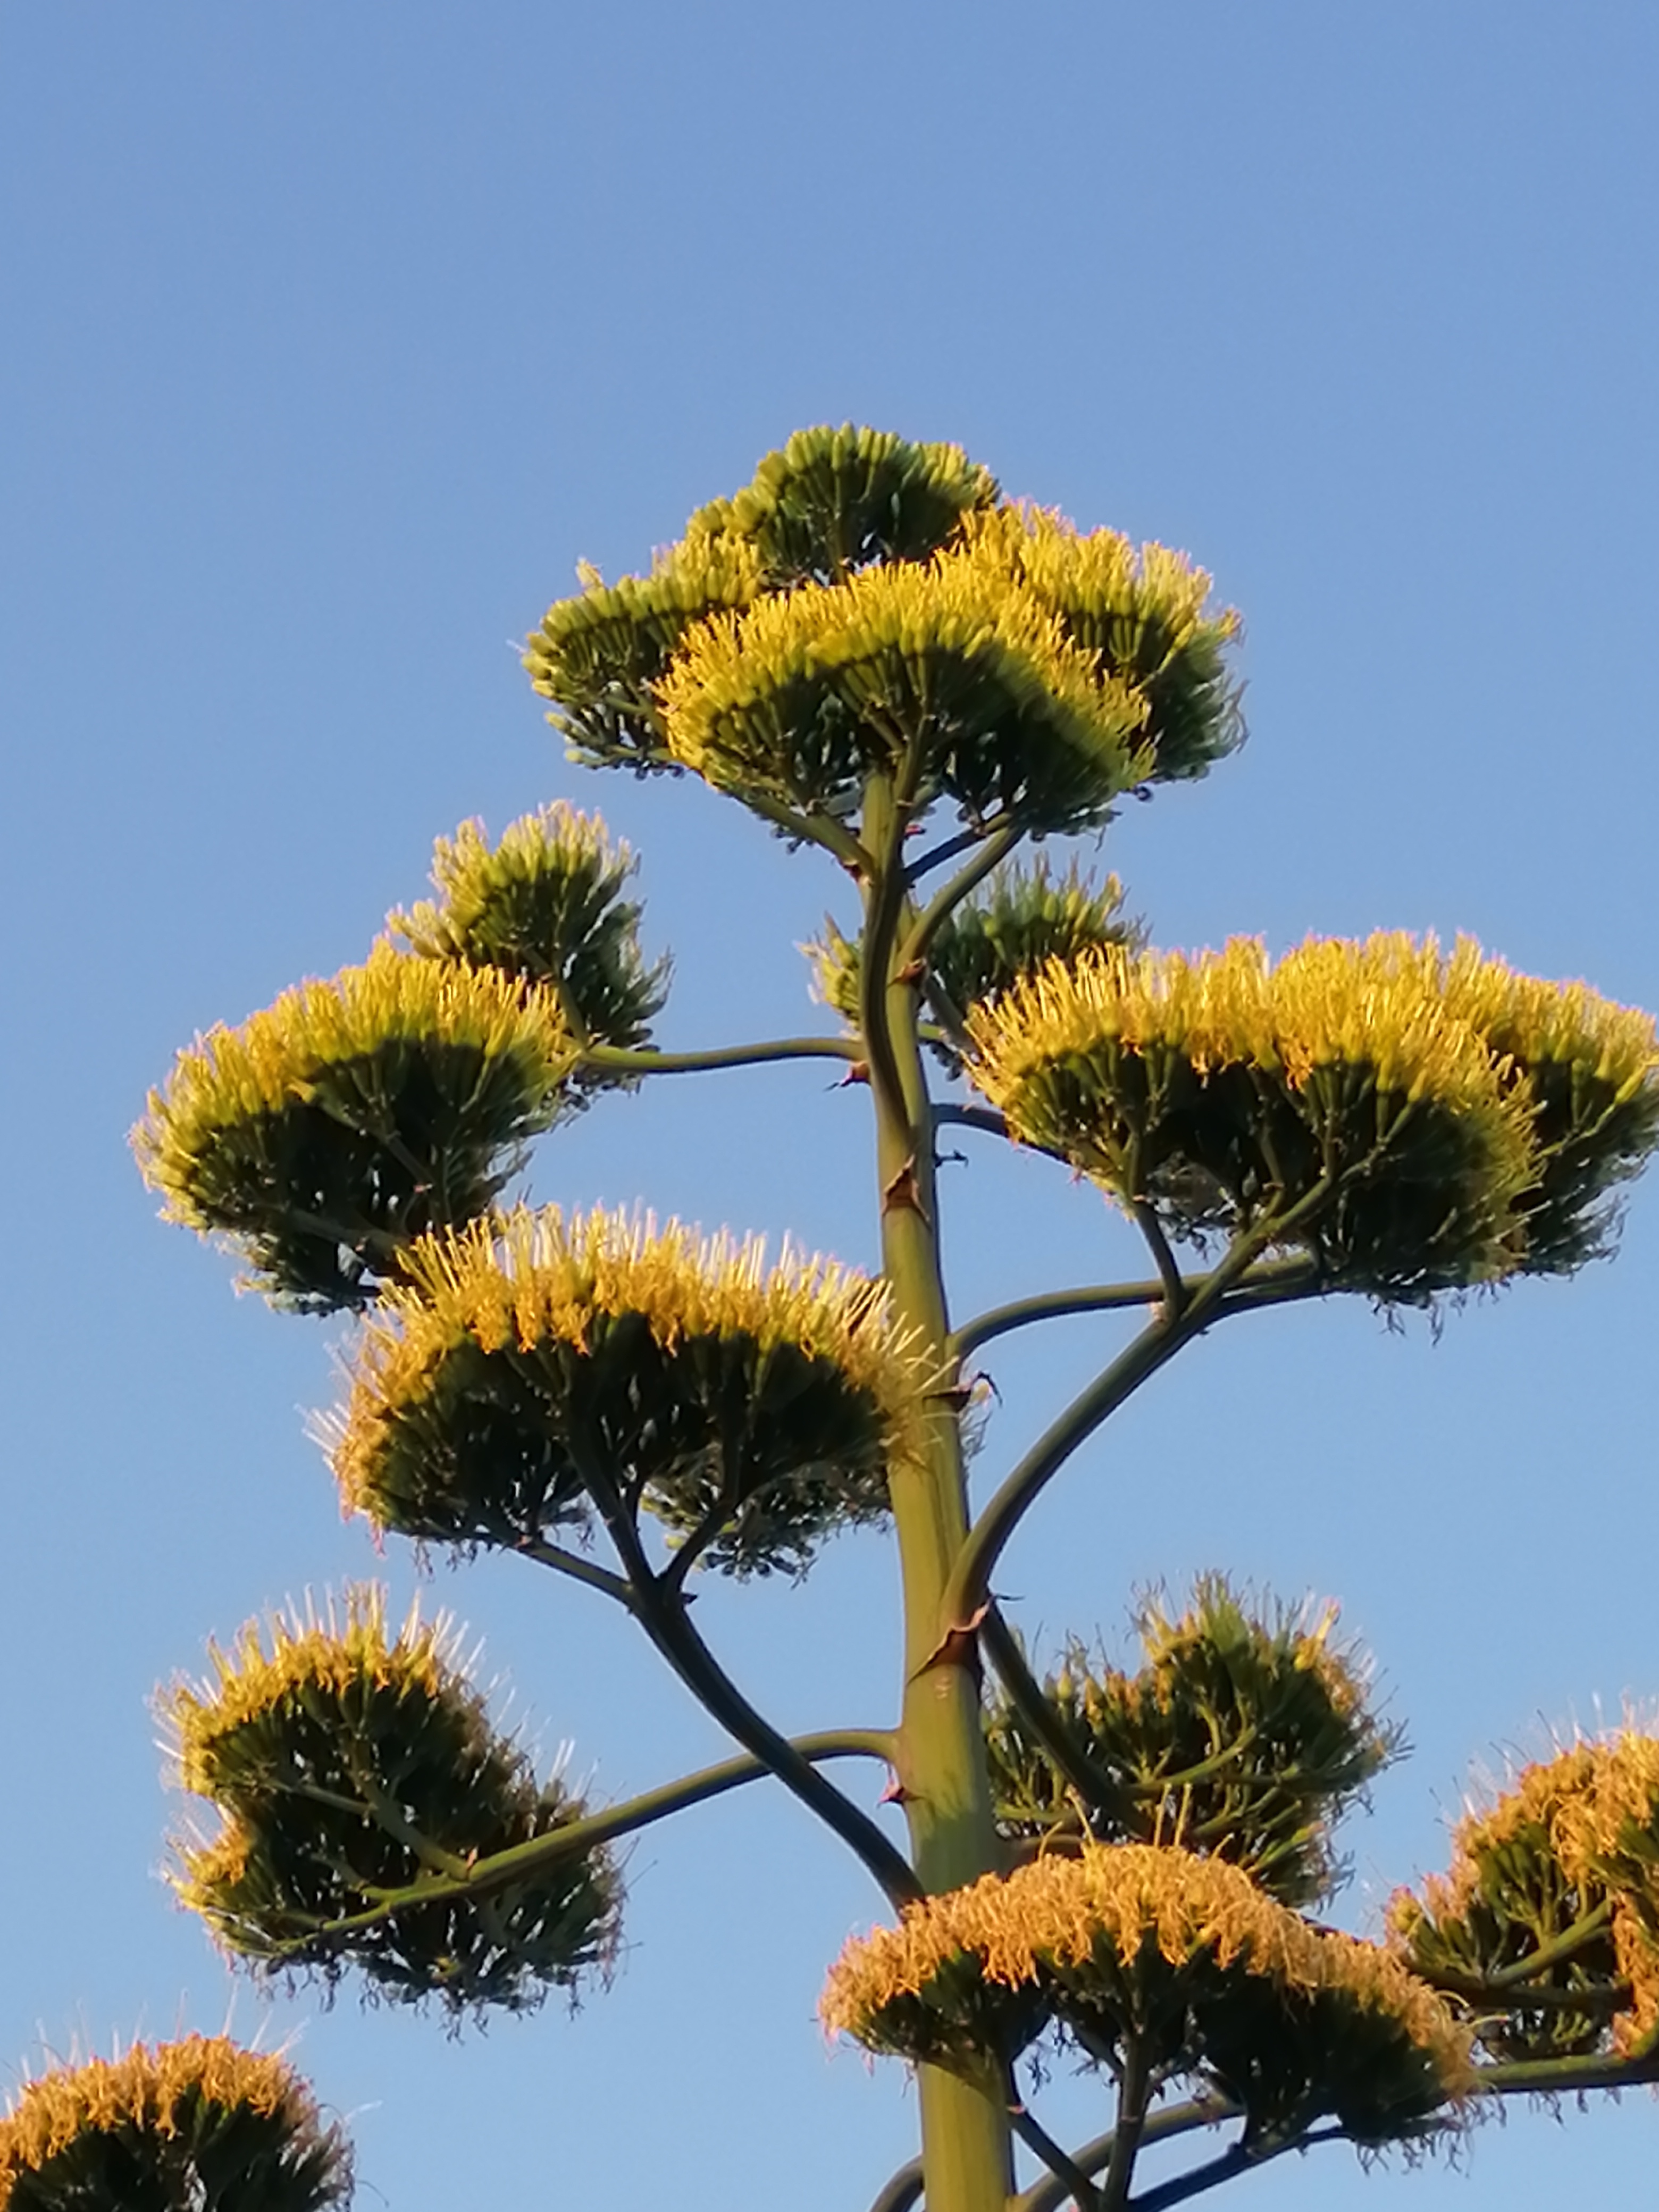 Ömrü boyunca bir kez çiçek açan 'agave' bitkisi Aliağa'da da bulundu